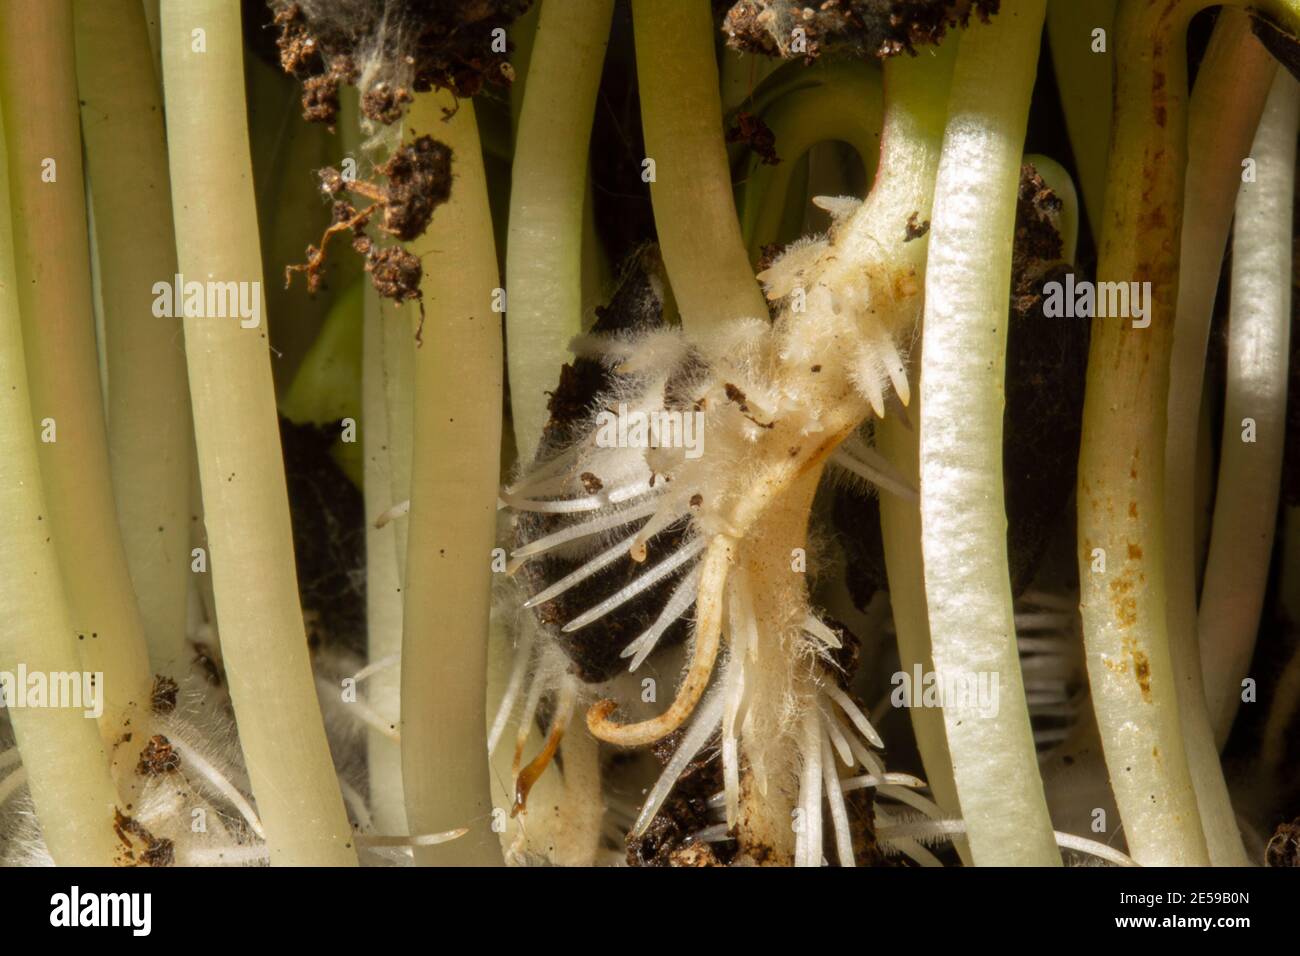 Macro foto della radice, rizoide dei semi di girasole. Semina di steli, Foto Stock